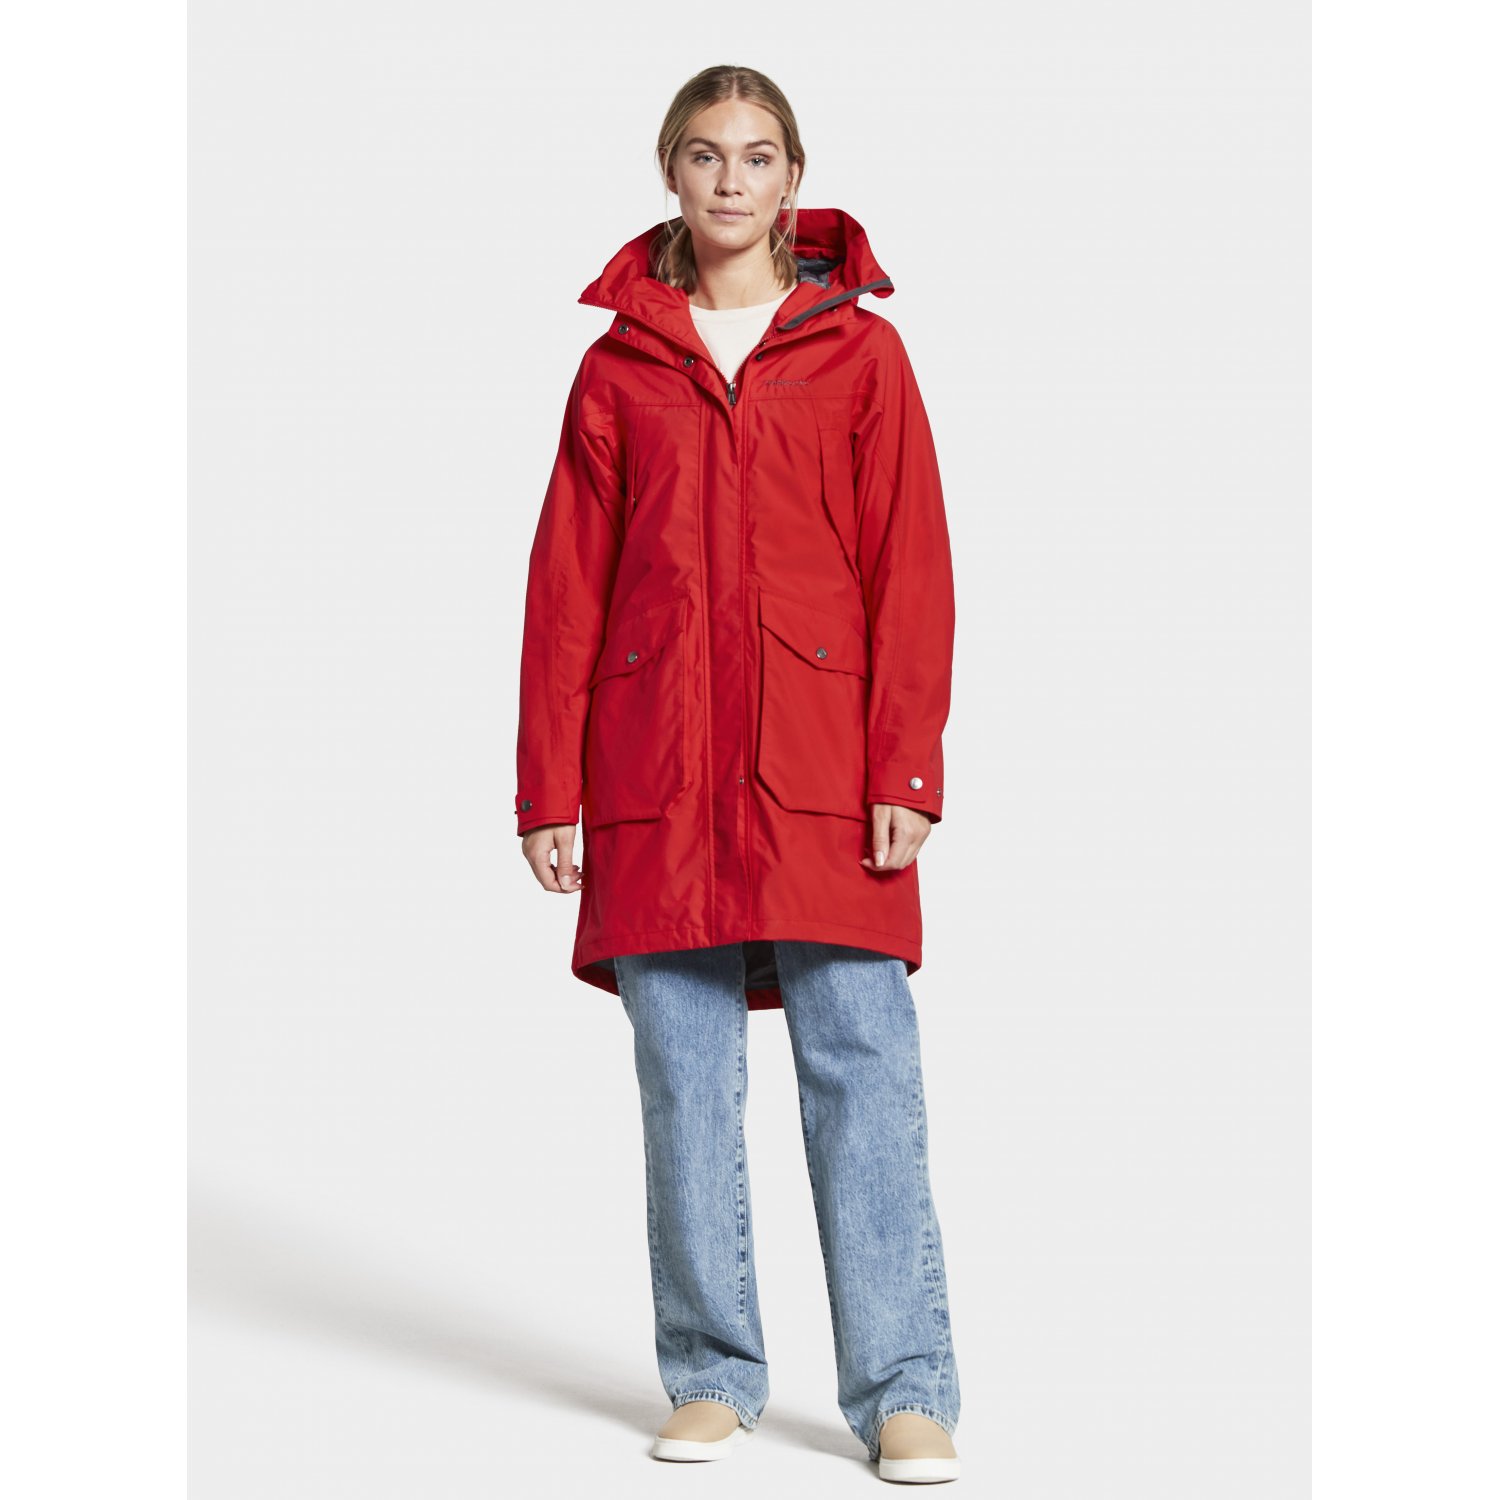 Куртка-парка женская THELMA (красный) Didriksons 504049 688 для девочек:  купить в Москве куртка-парка демисезон Didriksons